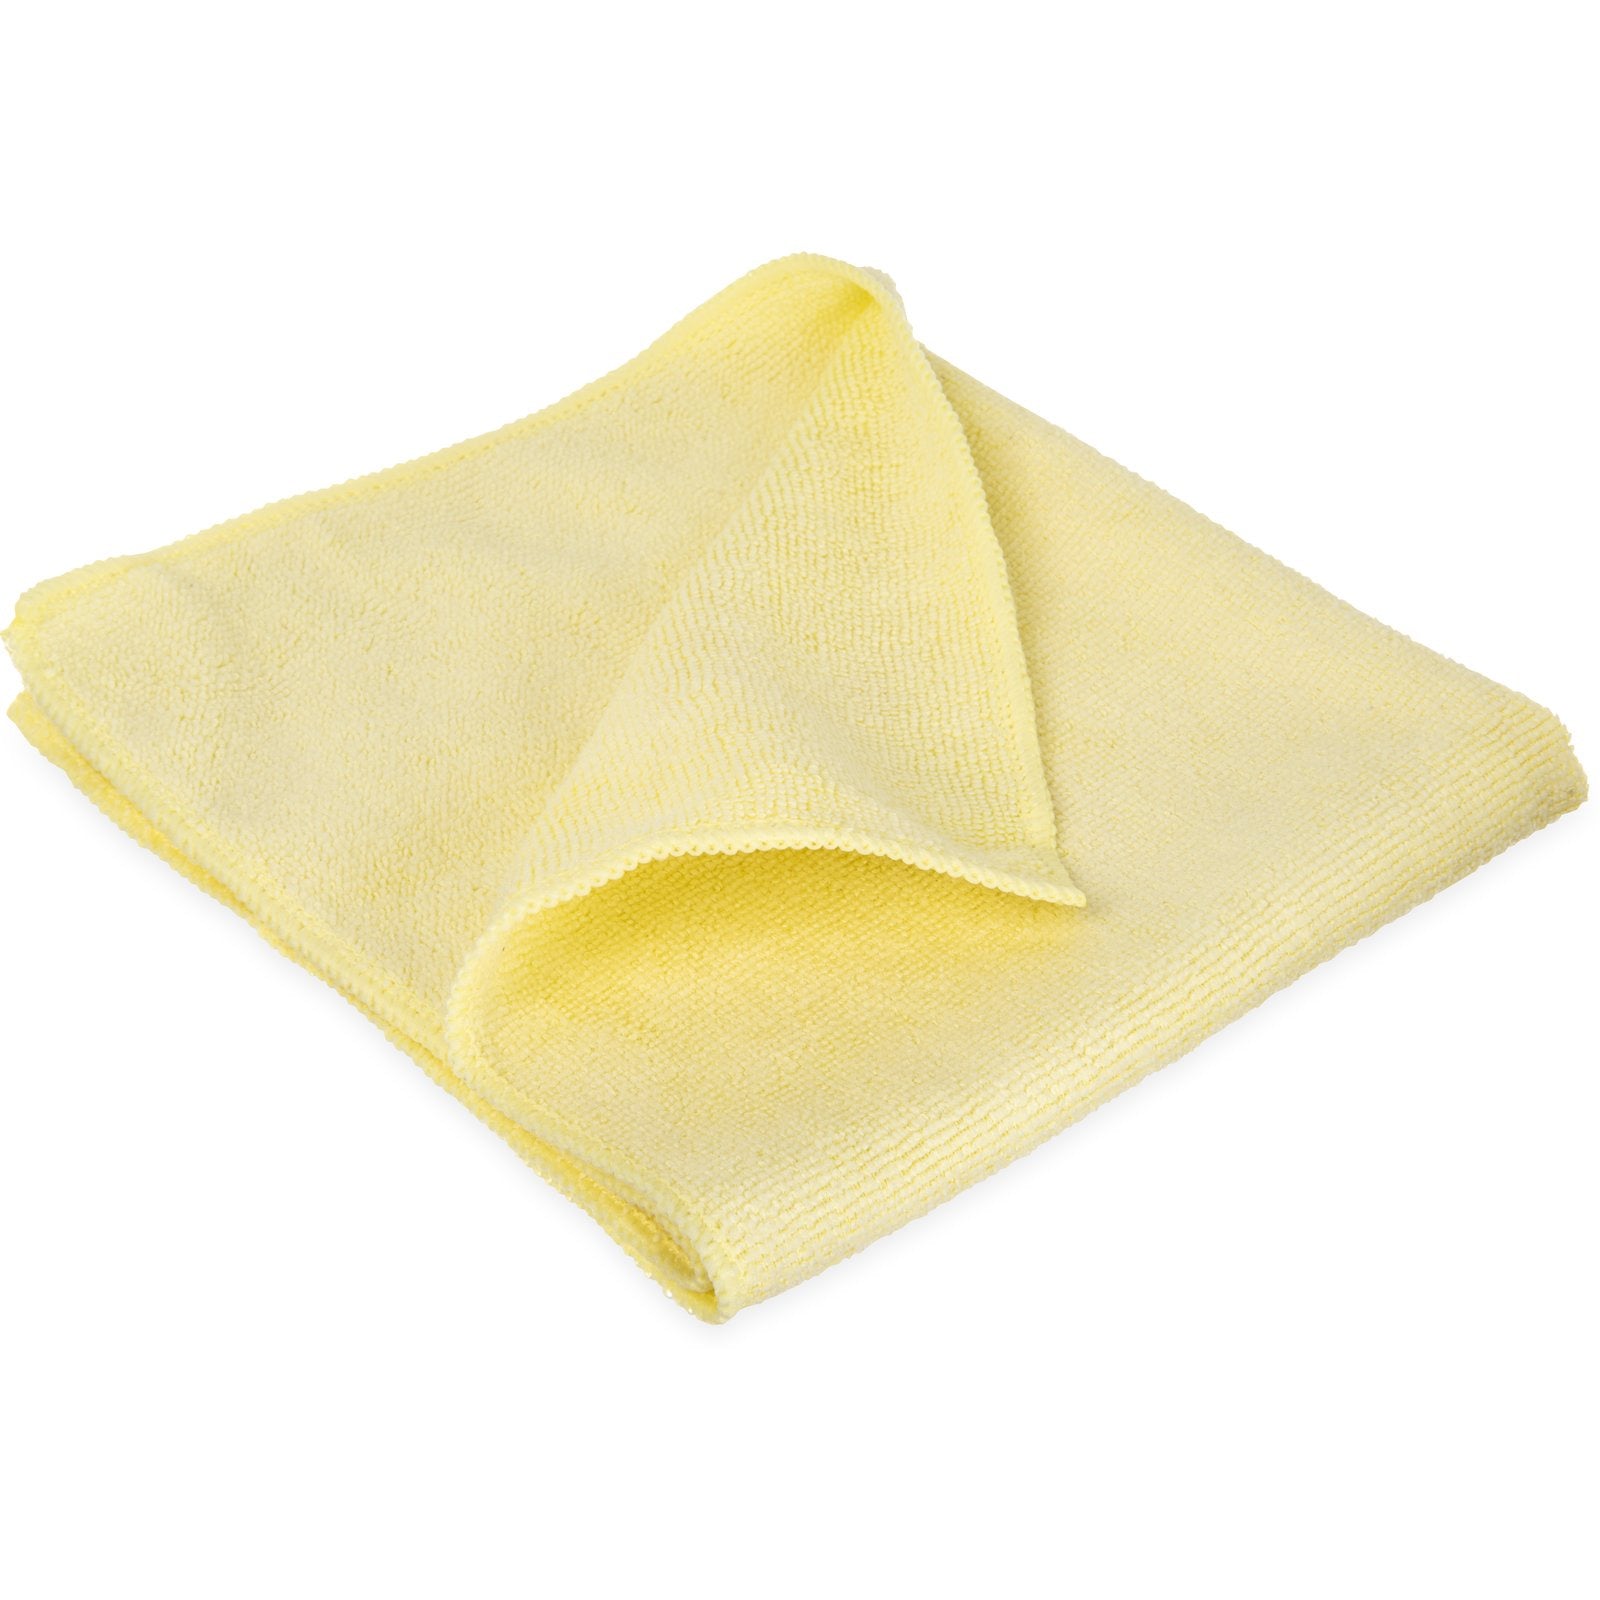 Fibreclean General Microfibre Cloth Yellow